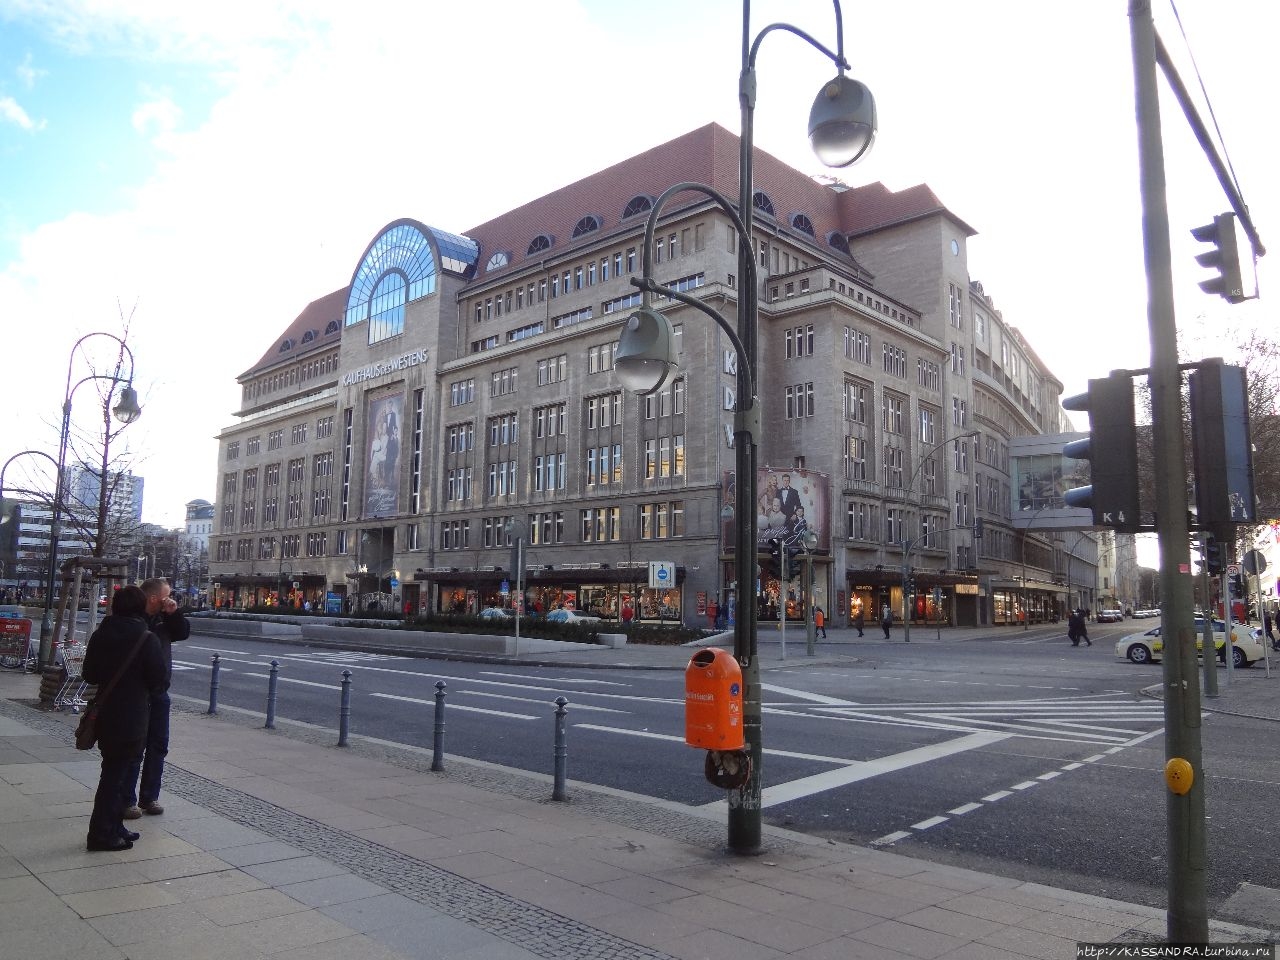 Торговый центр KaDeWe Берлин, Германия